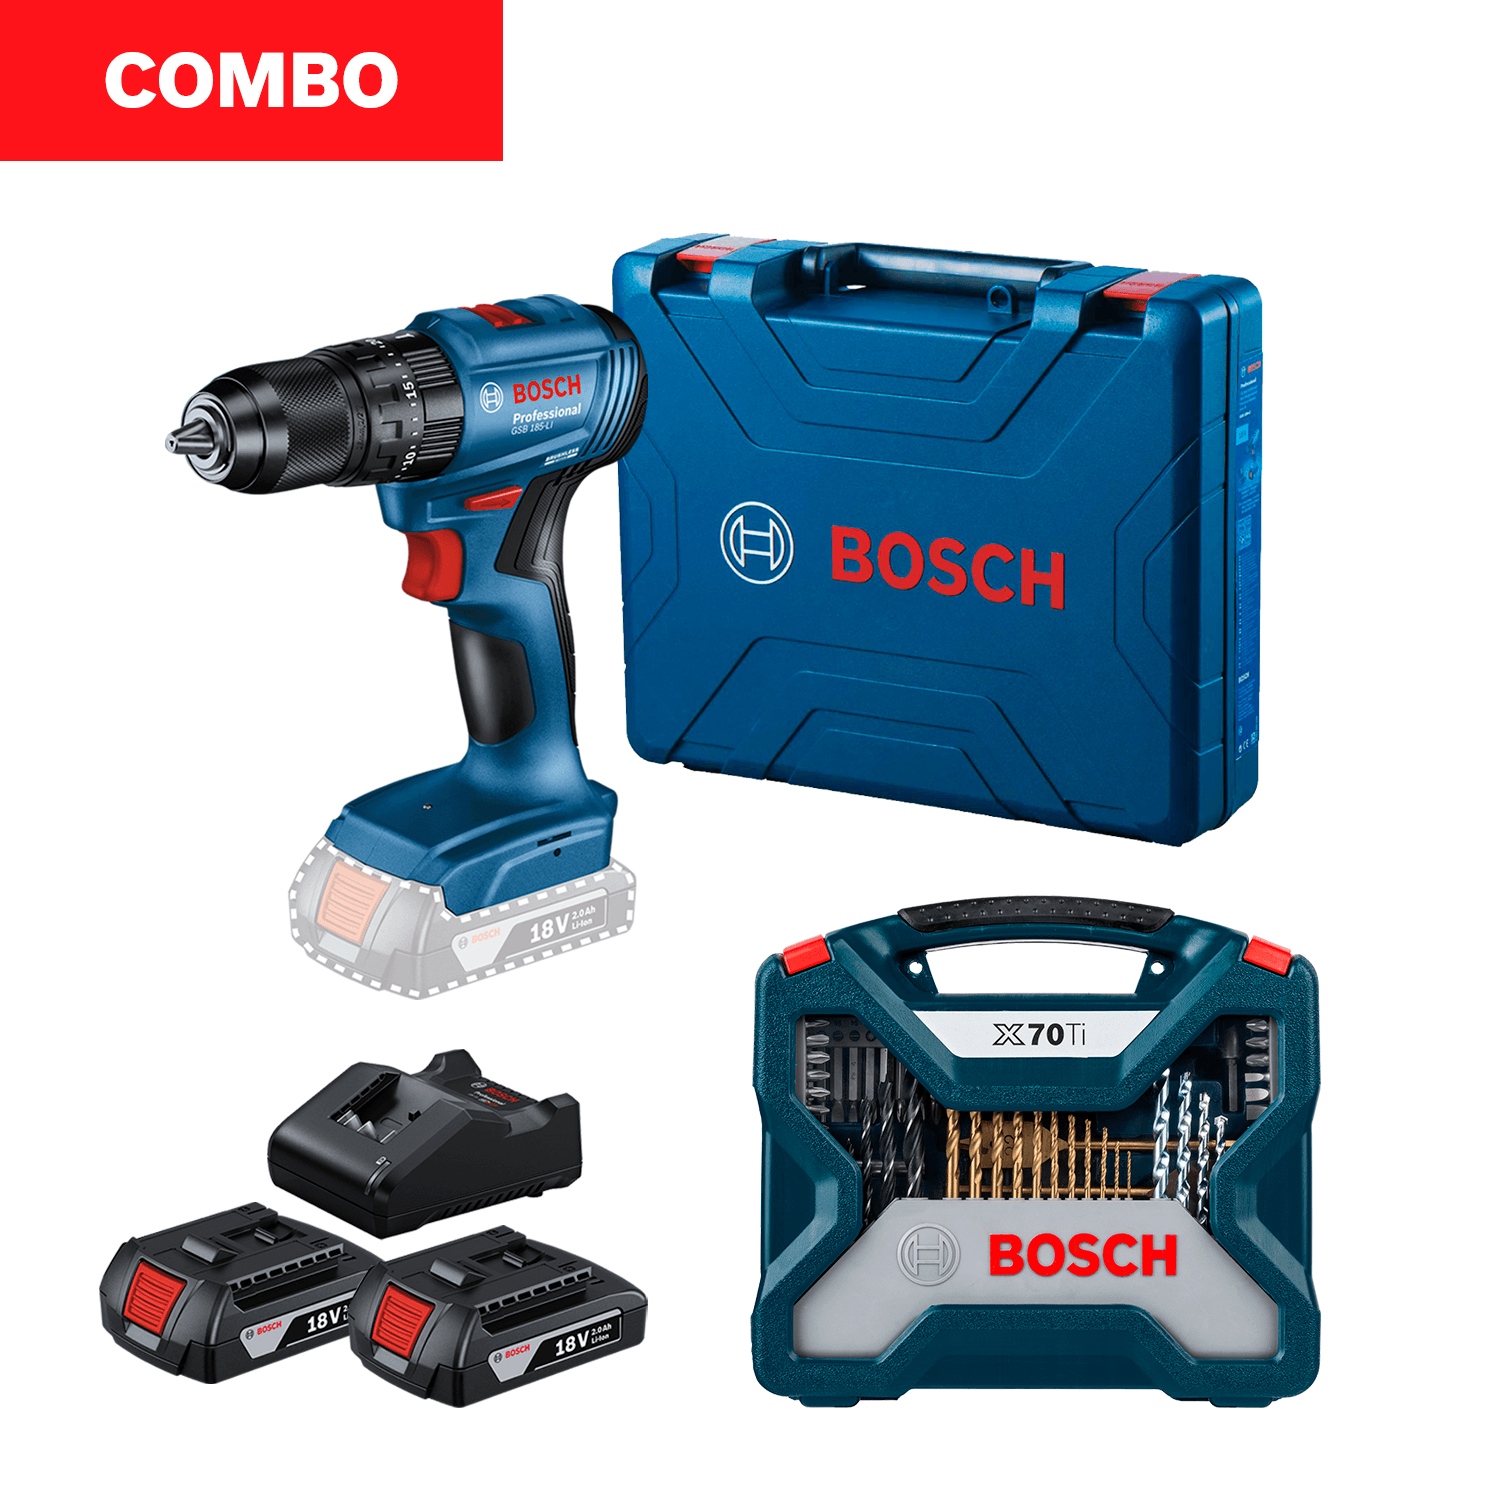  Bosch - Combo con 2 herramientas portátiles de 18V